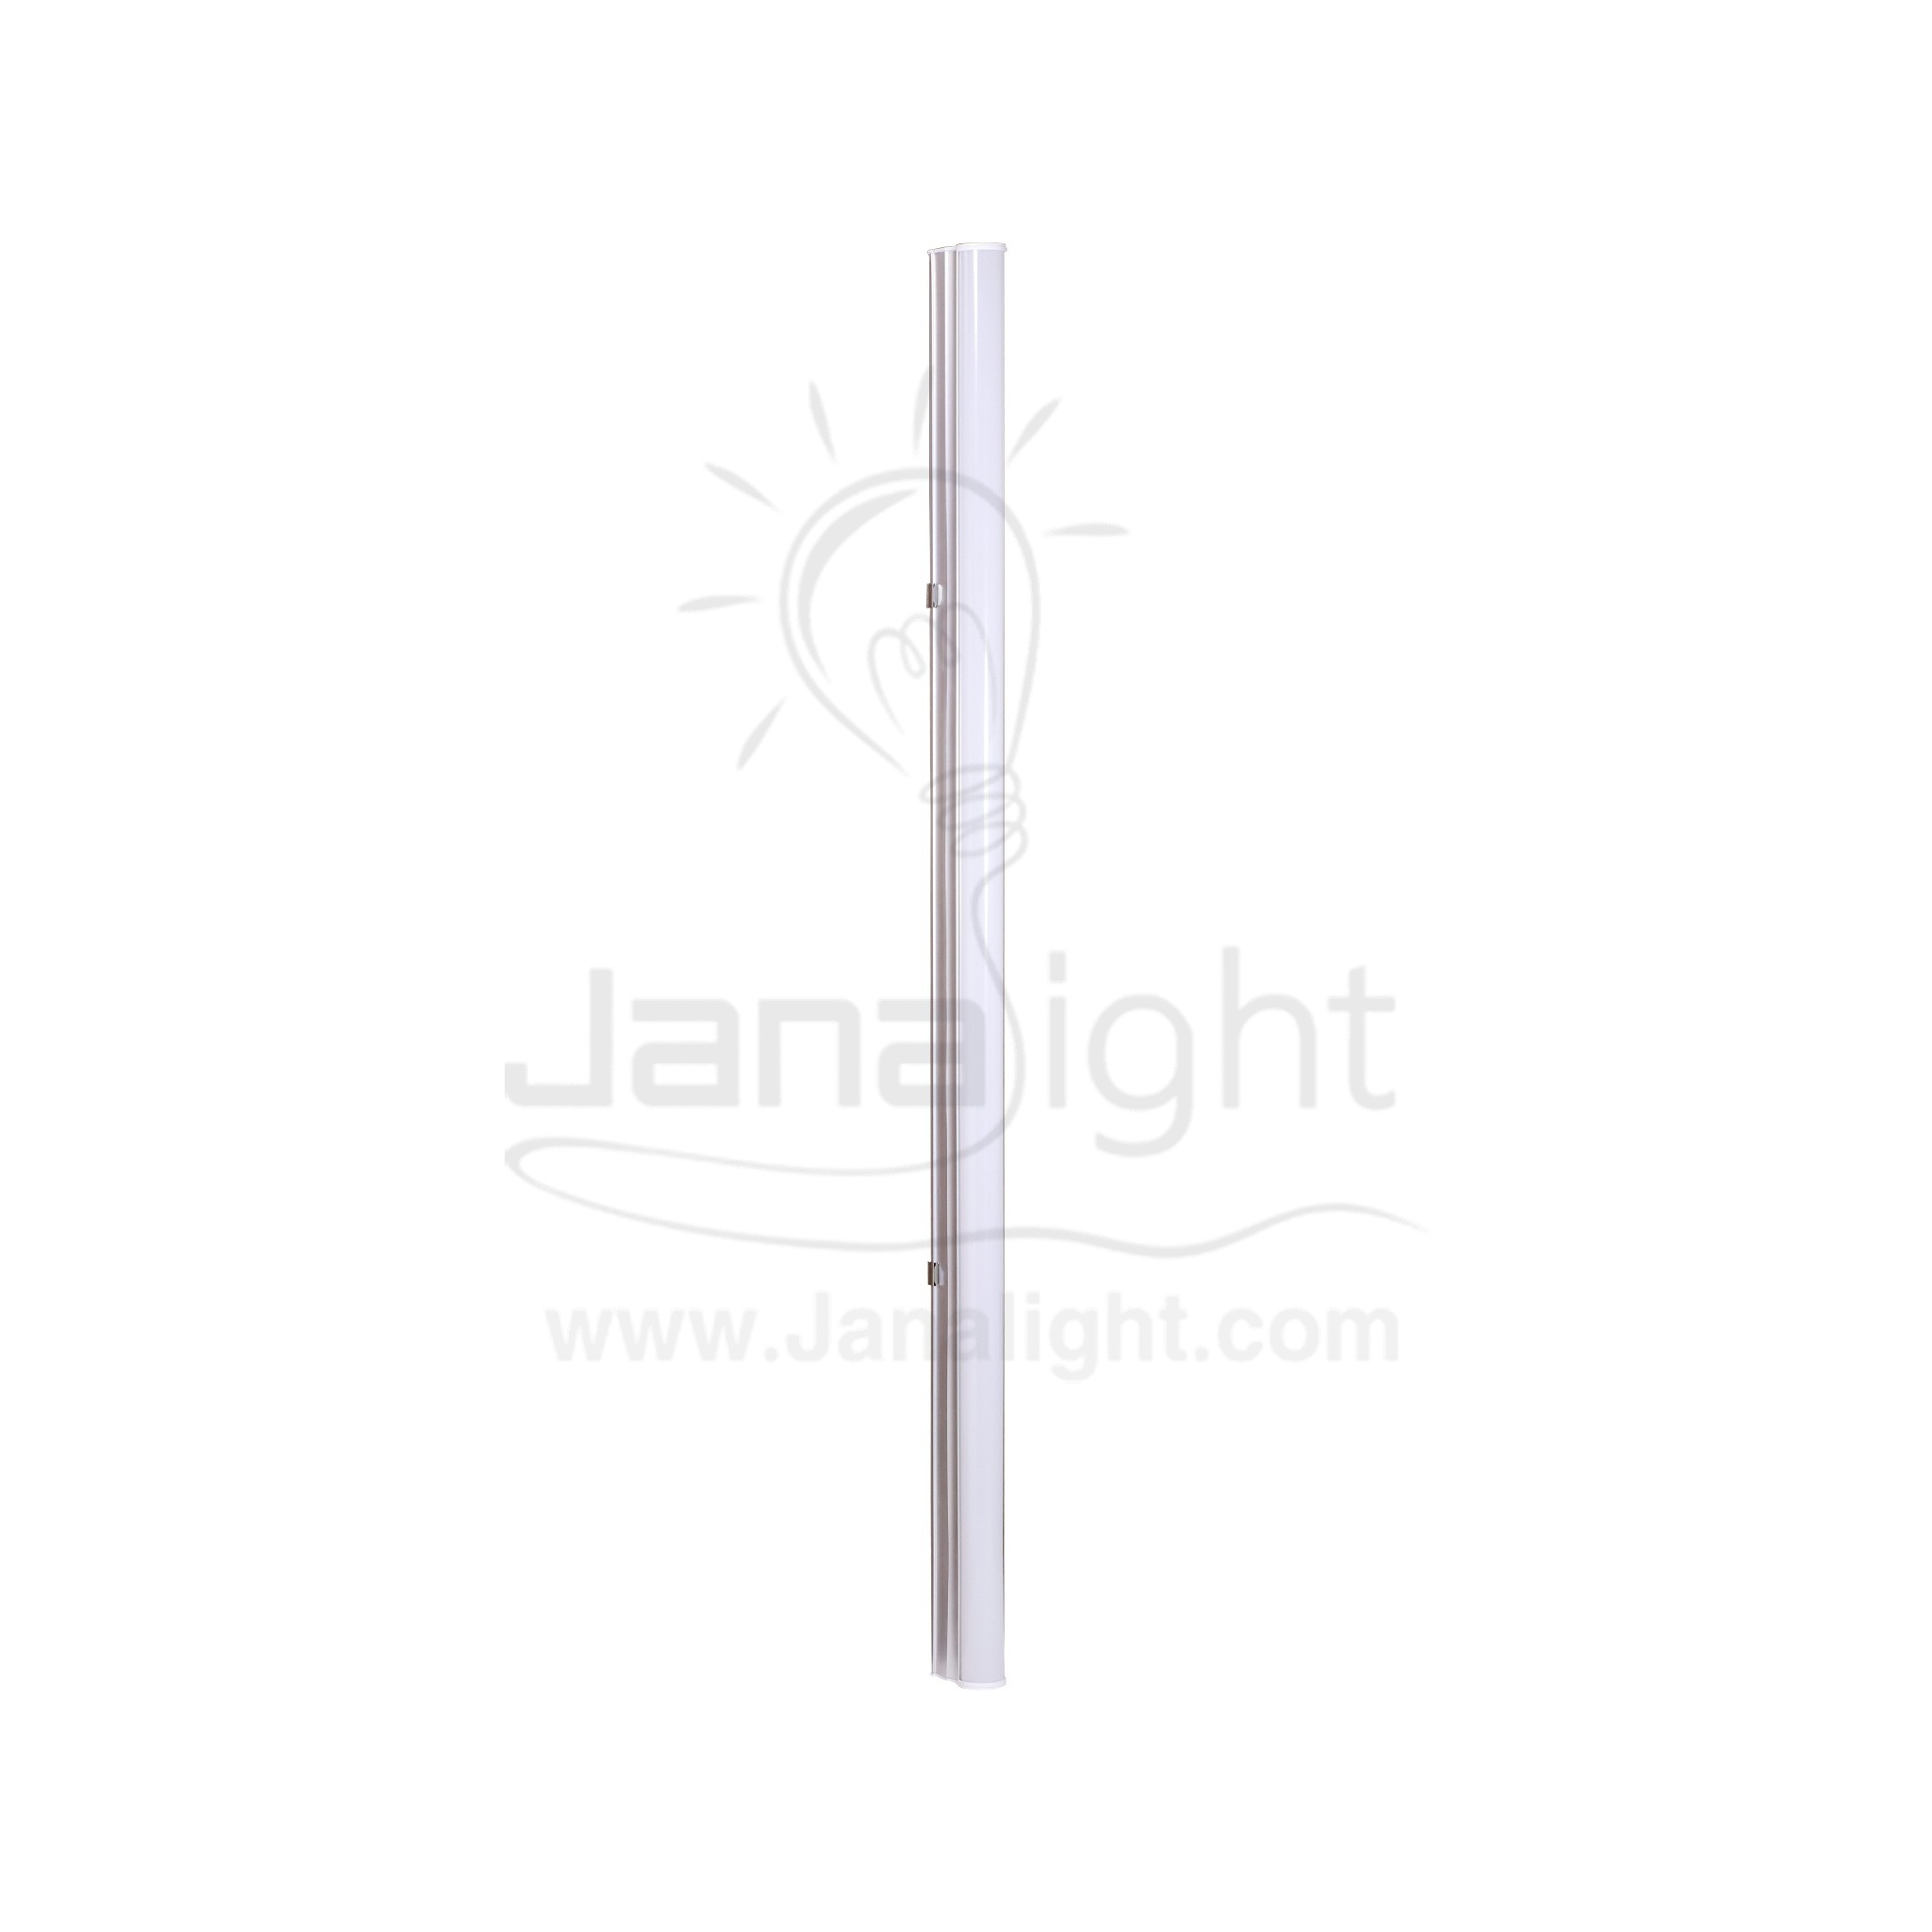 كشاف لد تي فايف 90 سم 14 وات وورم جنى لايت T5 led lamp rectangle tube light 90cm 12w warm Janalight 10322117(1)